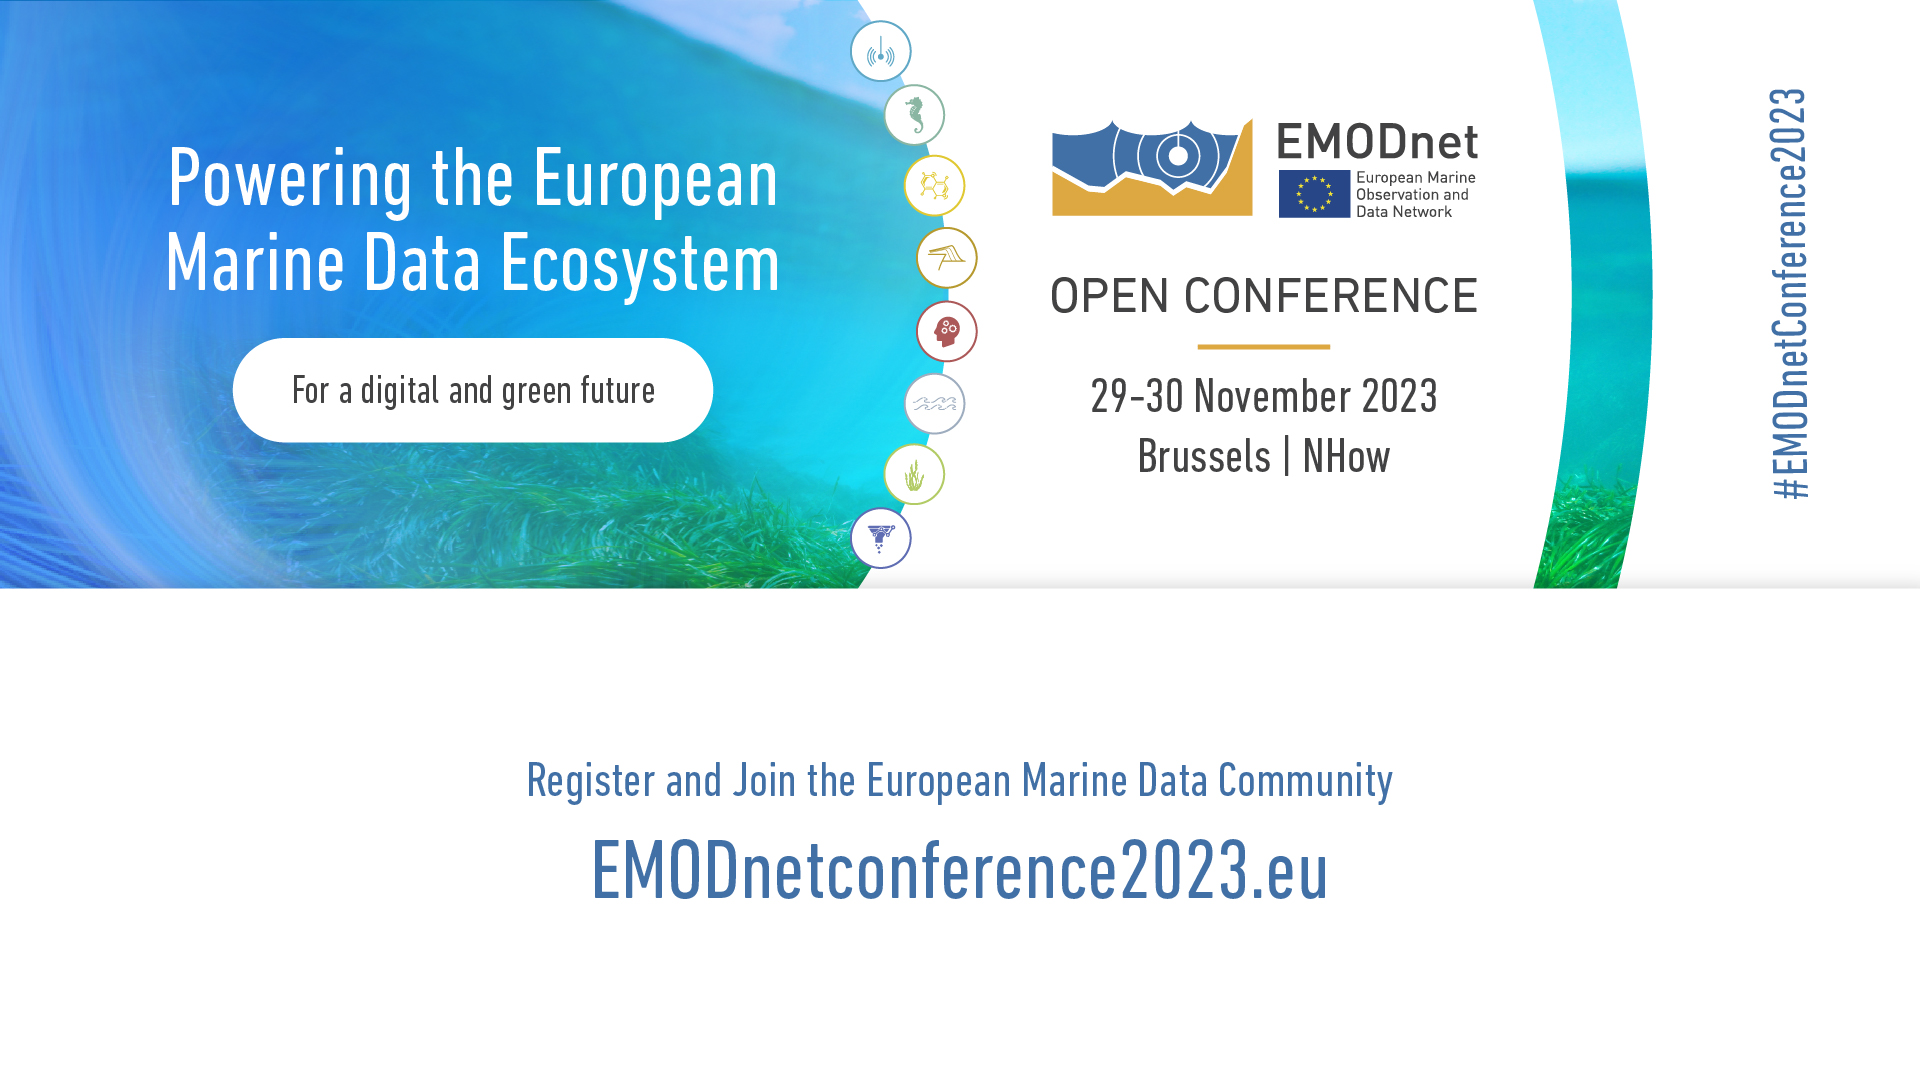 EMODnet Open Conference 2023